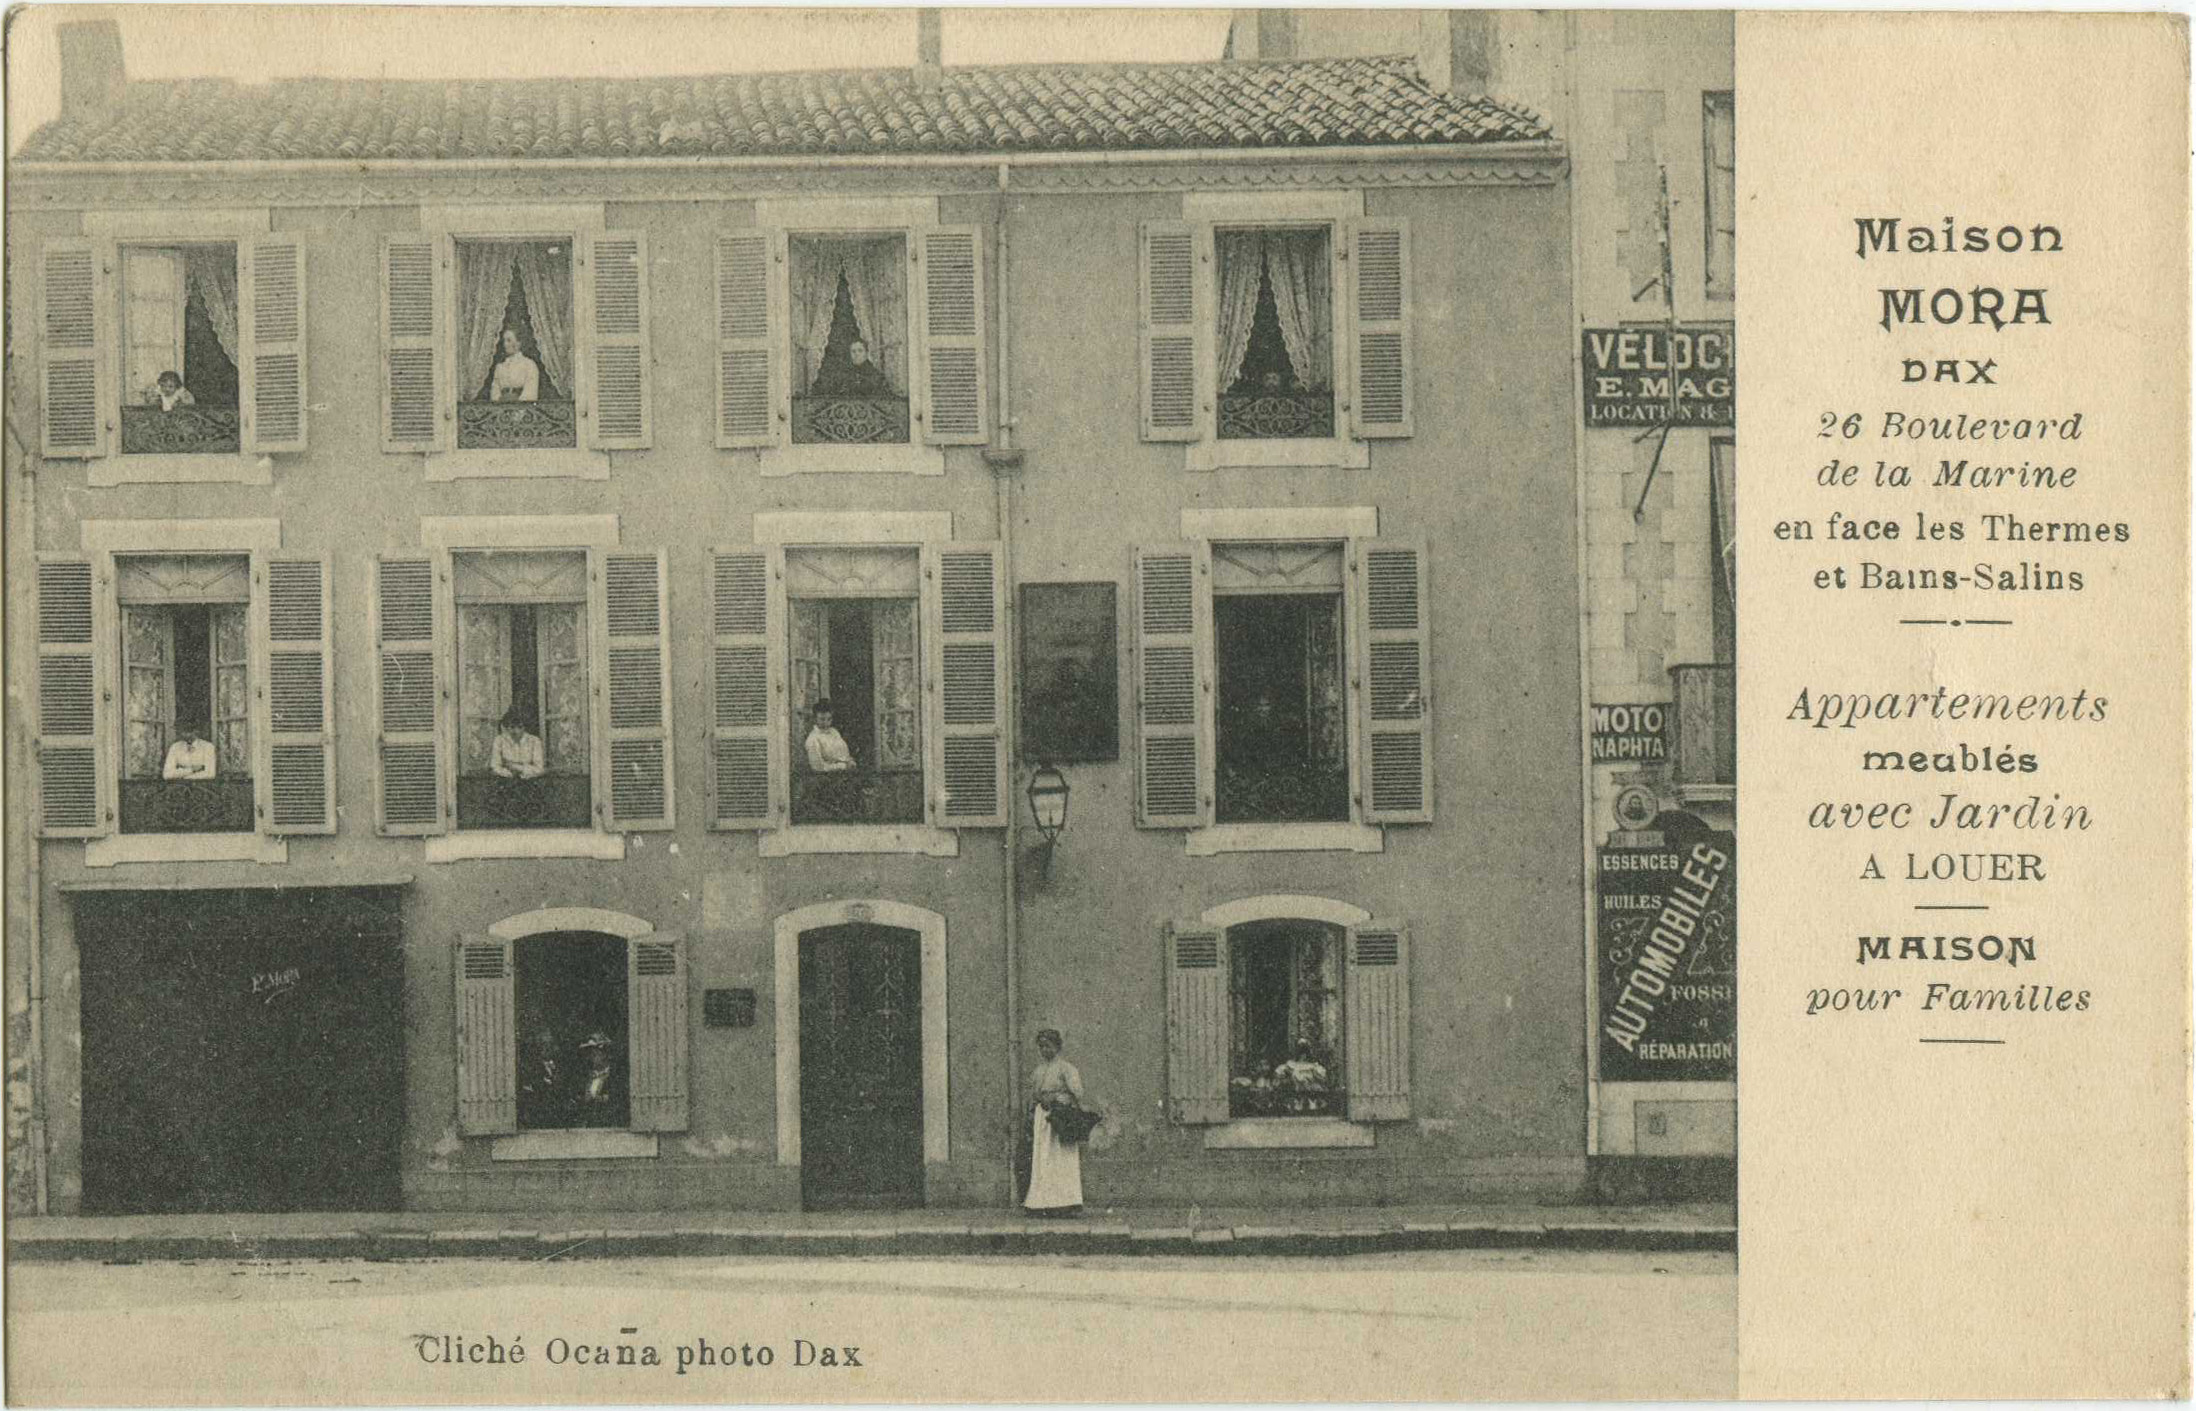 Dax - Maison MORA - 26 Boulevard de la Marine - en face les Thermes et Bains-Salins - Appartements meublés avec Jardin <small>A LOUER</small> - MAISON pour Familles